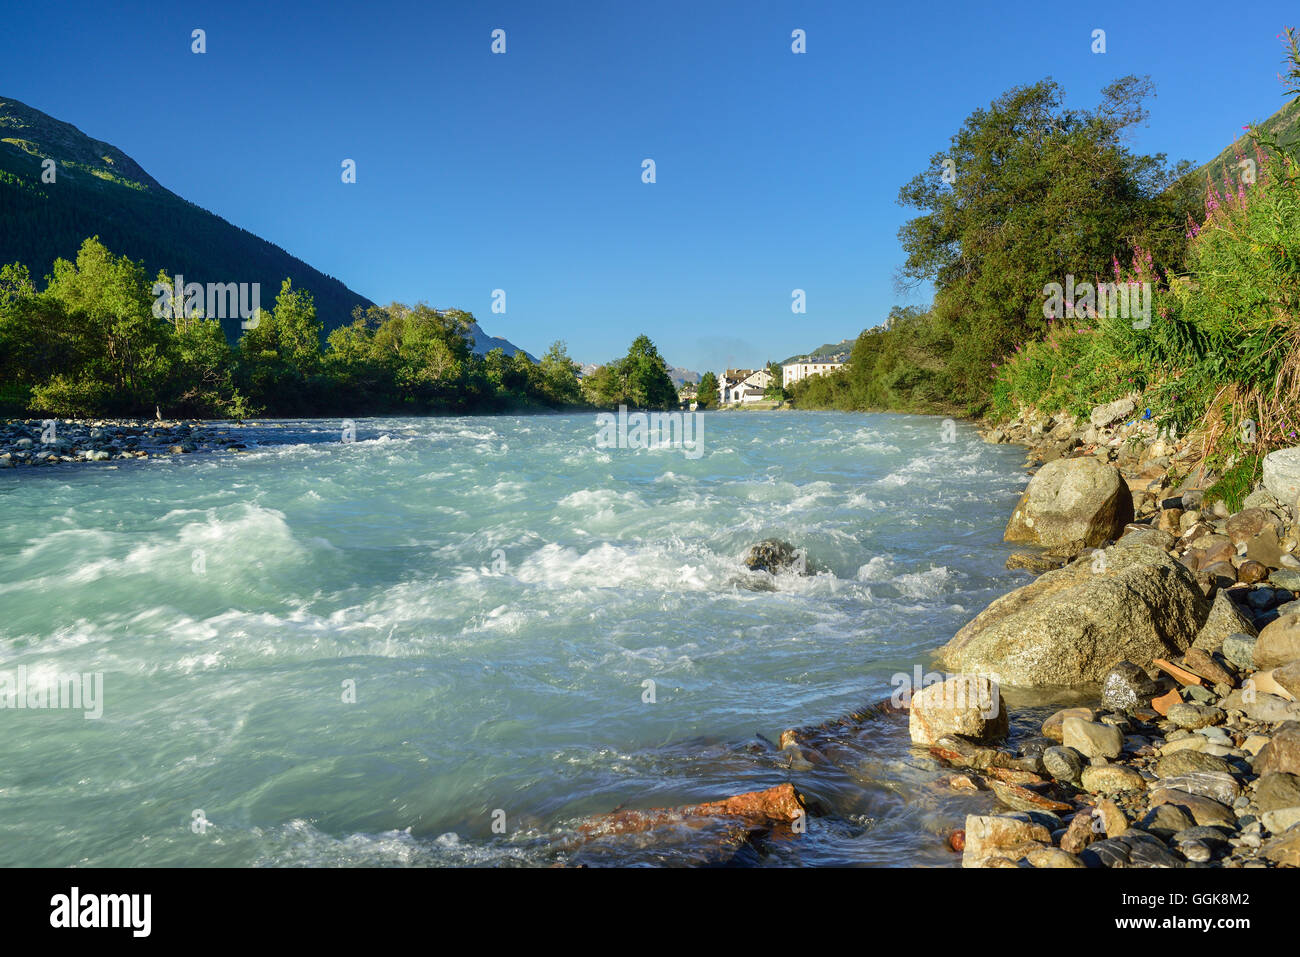 La rivière Inn, La Punt-Chamues-ch, Upper Engadine, Canton des Grisons, Suisse Banque D'Images